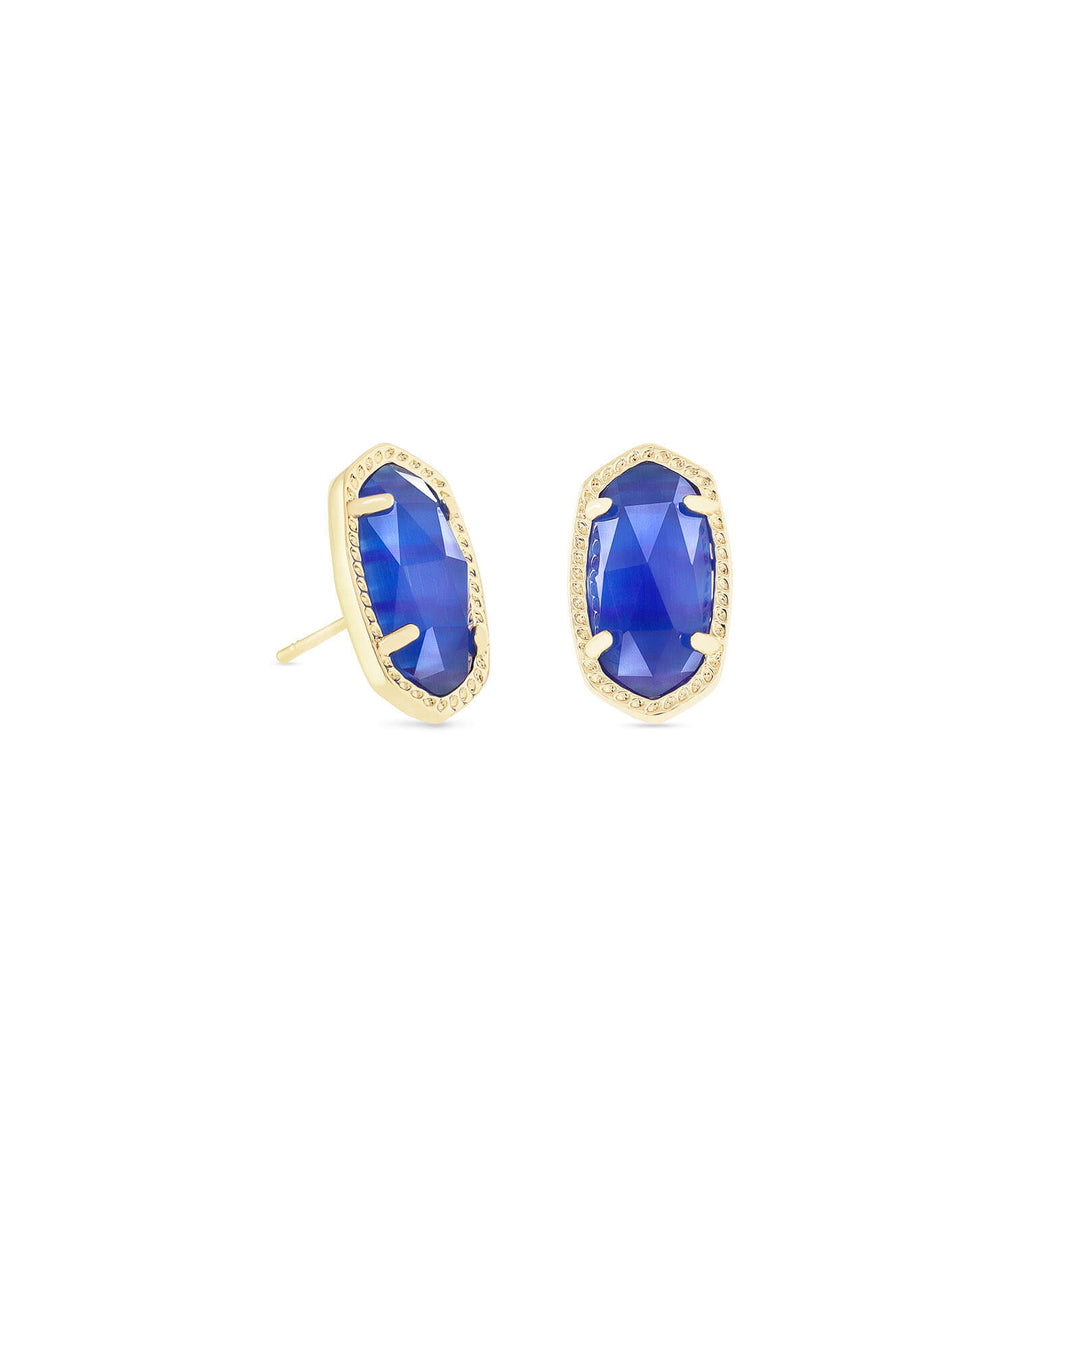 Kendra Scott Ellie Gold Stud Earrings in Cobalt Cats Eye